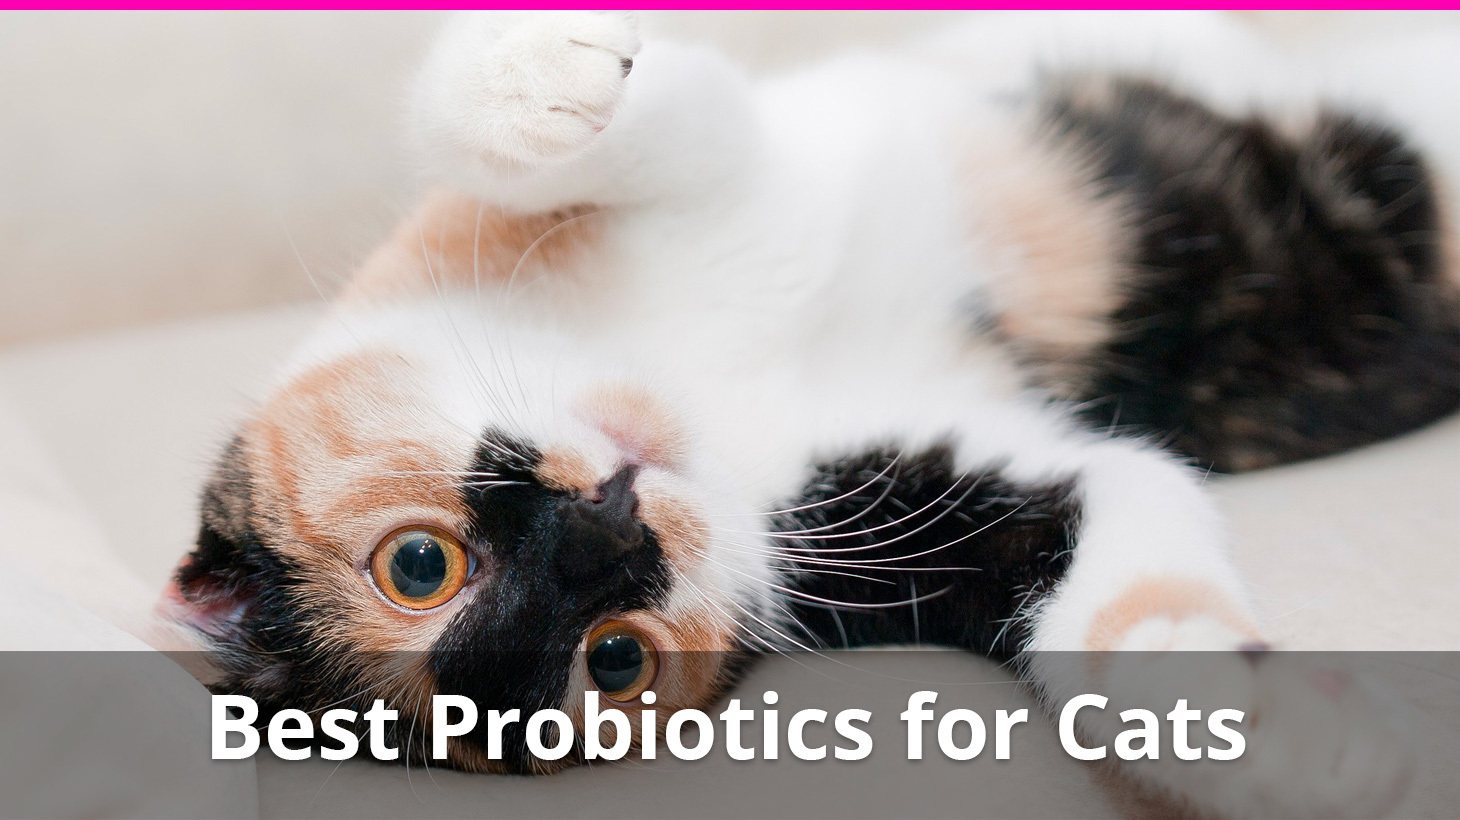 probiotics for cats benefits